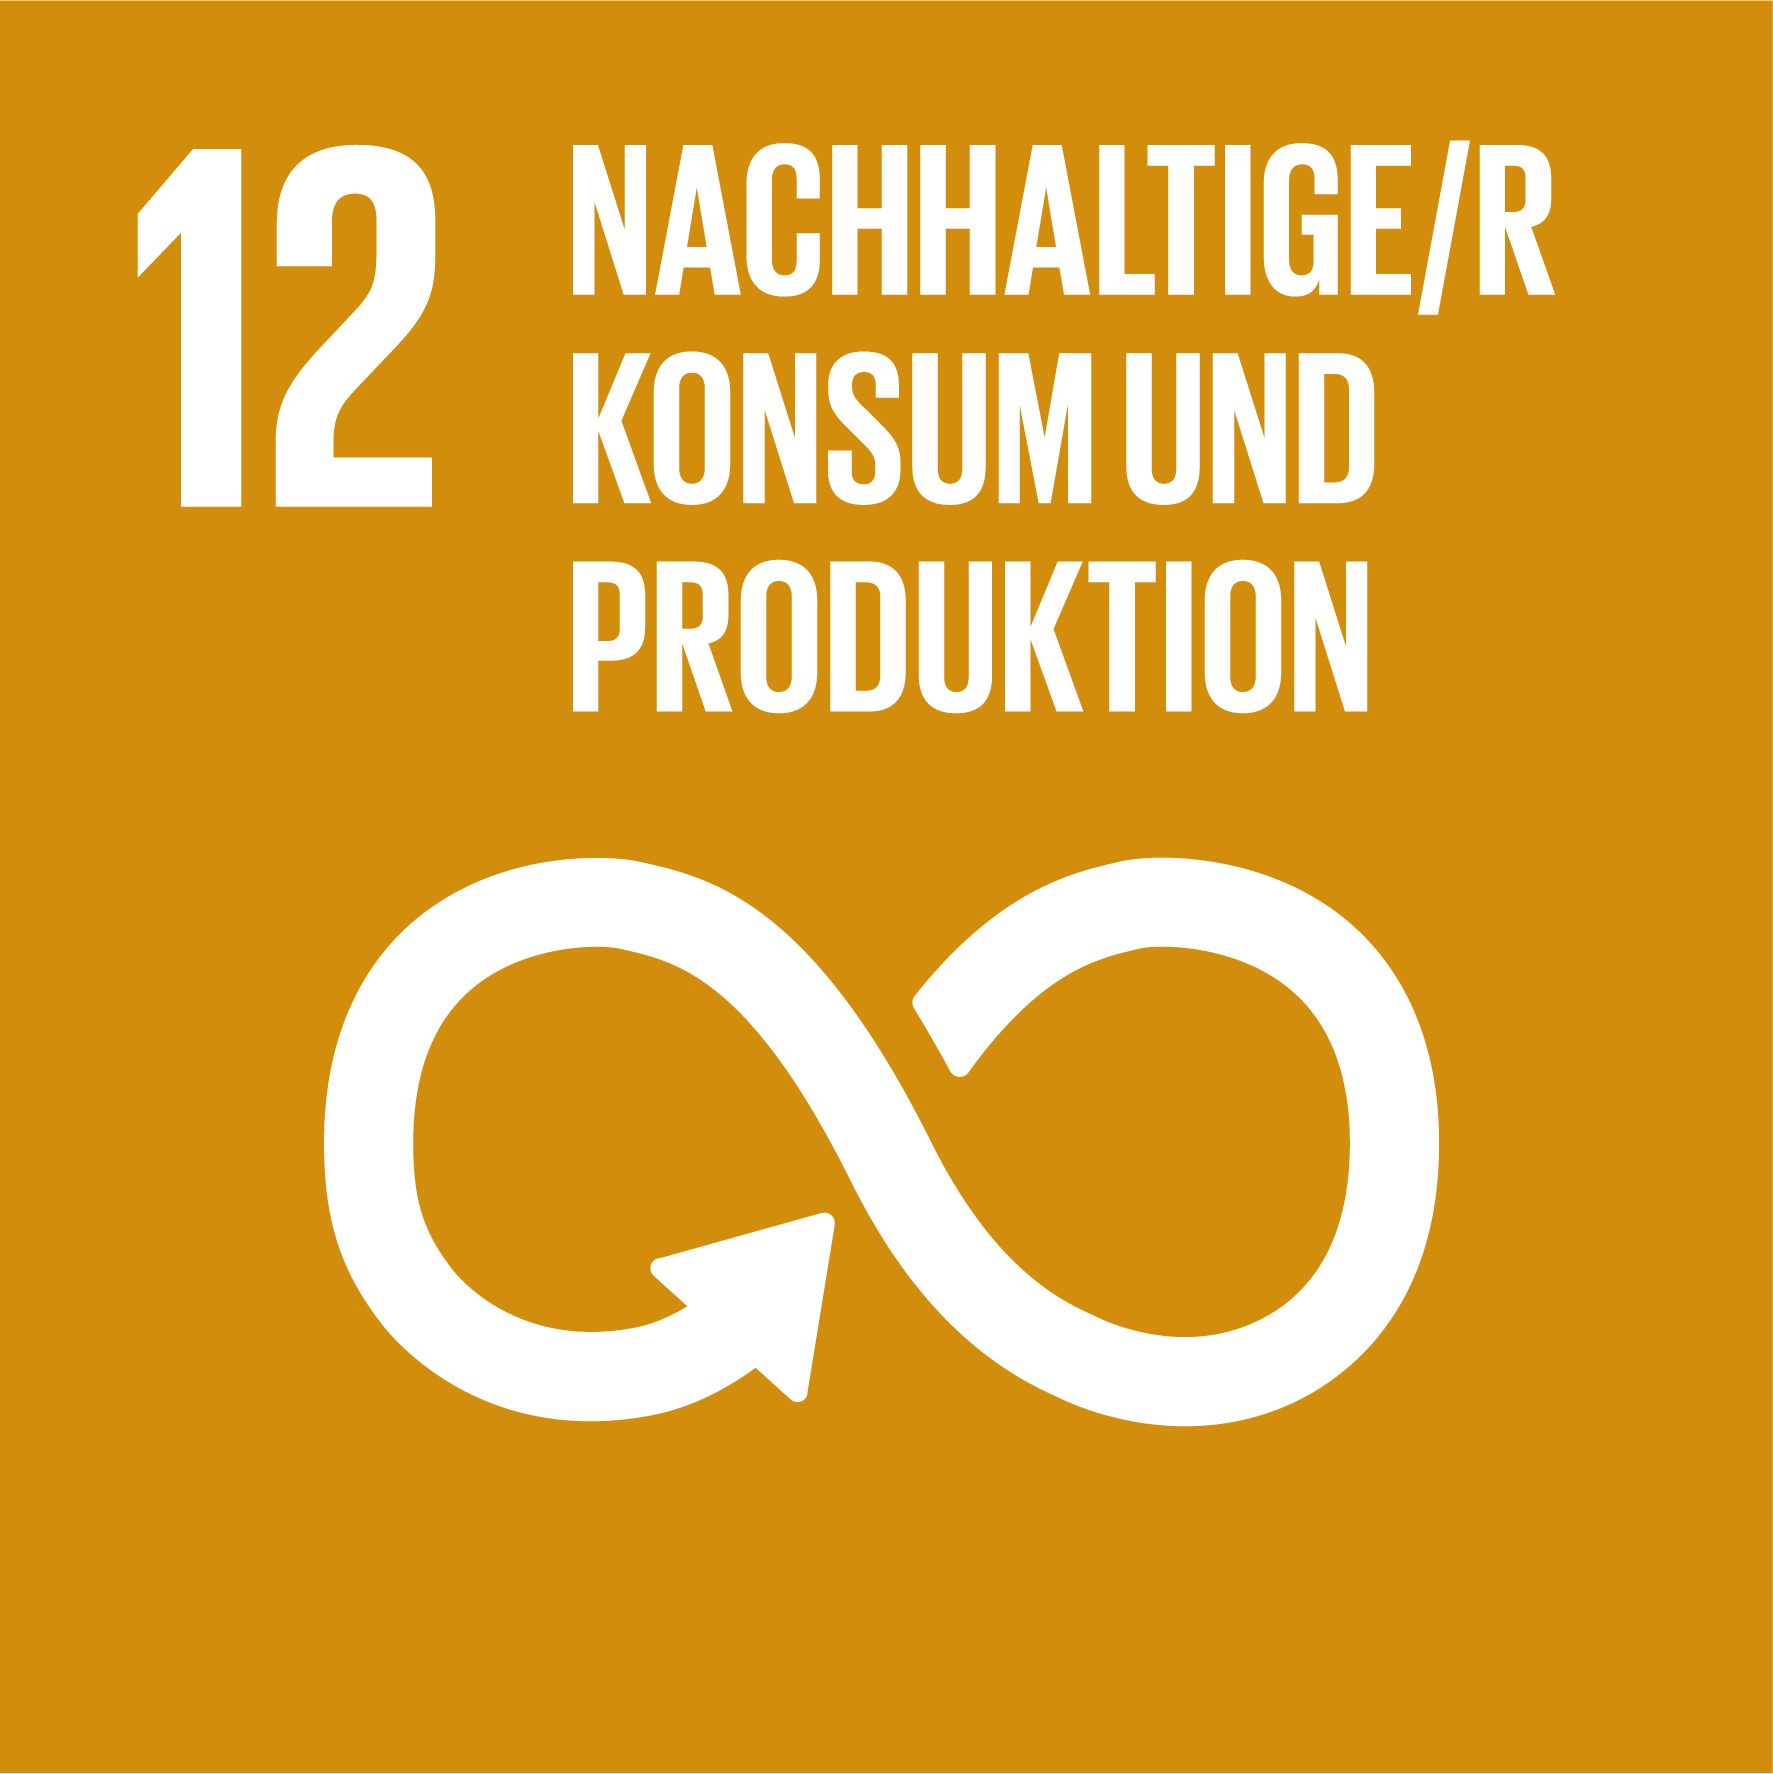 Ziel 12: nachhaltige/r Konsum und Produktion